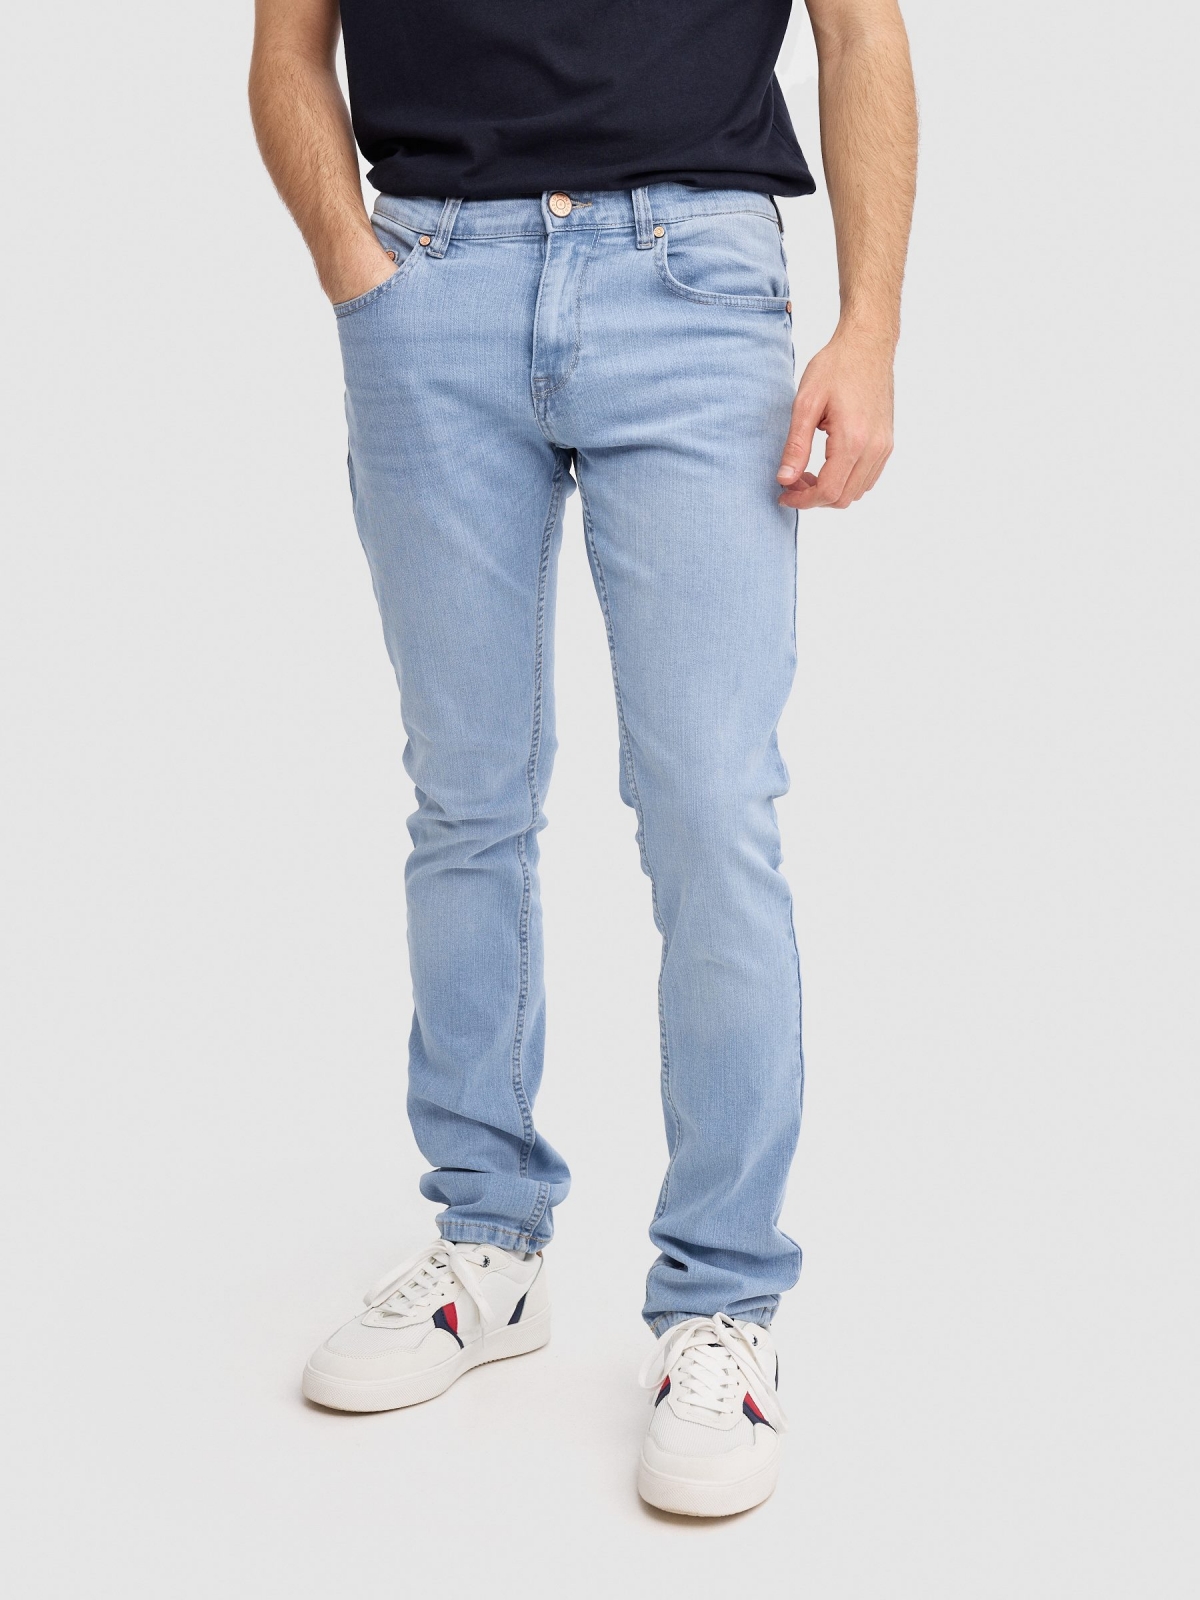 Calça jeans regular fit azul claro lavagem fraca da coxa azul vista meia frontal